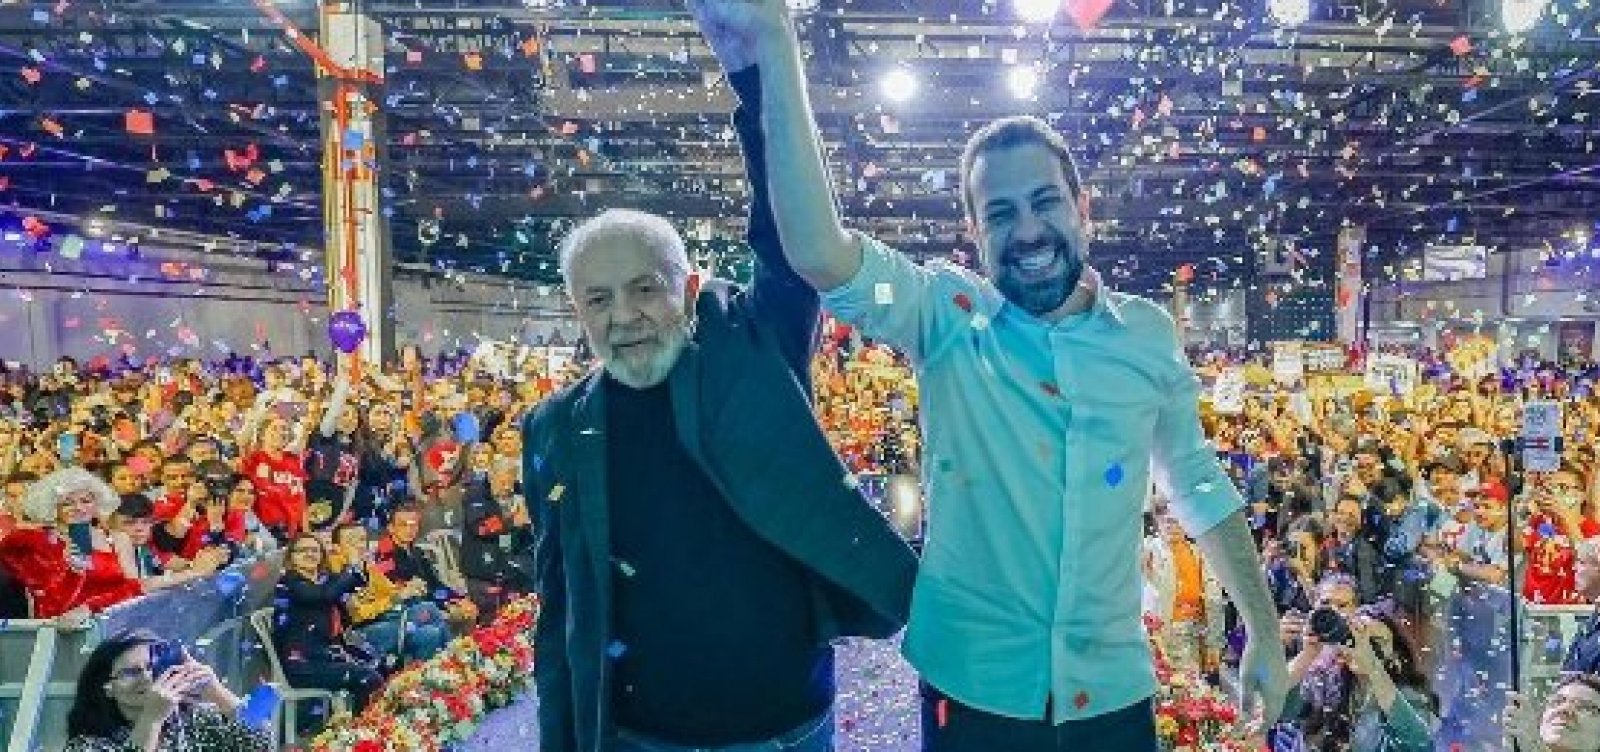 Boulos lança candidatura à eleição paulistana em evento com Lula 